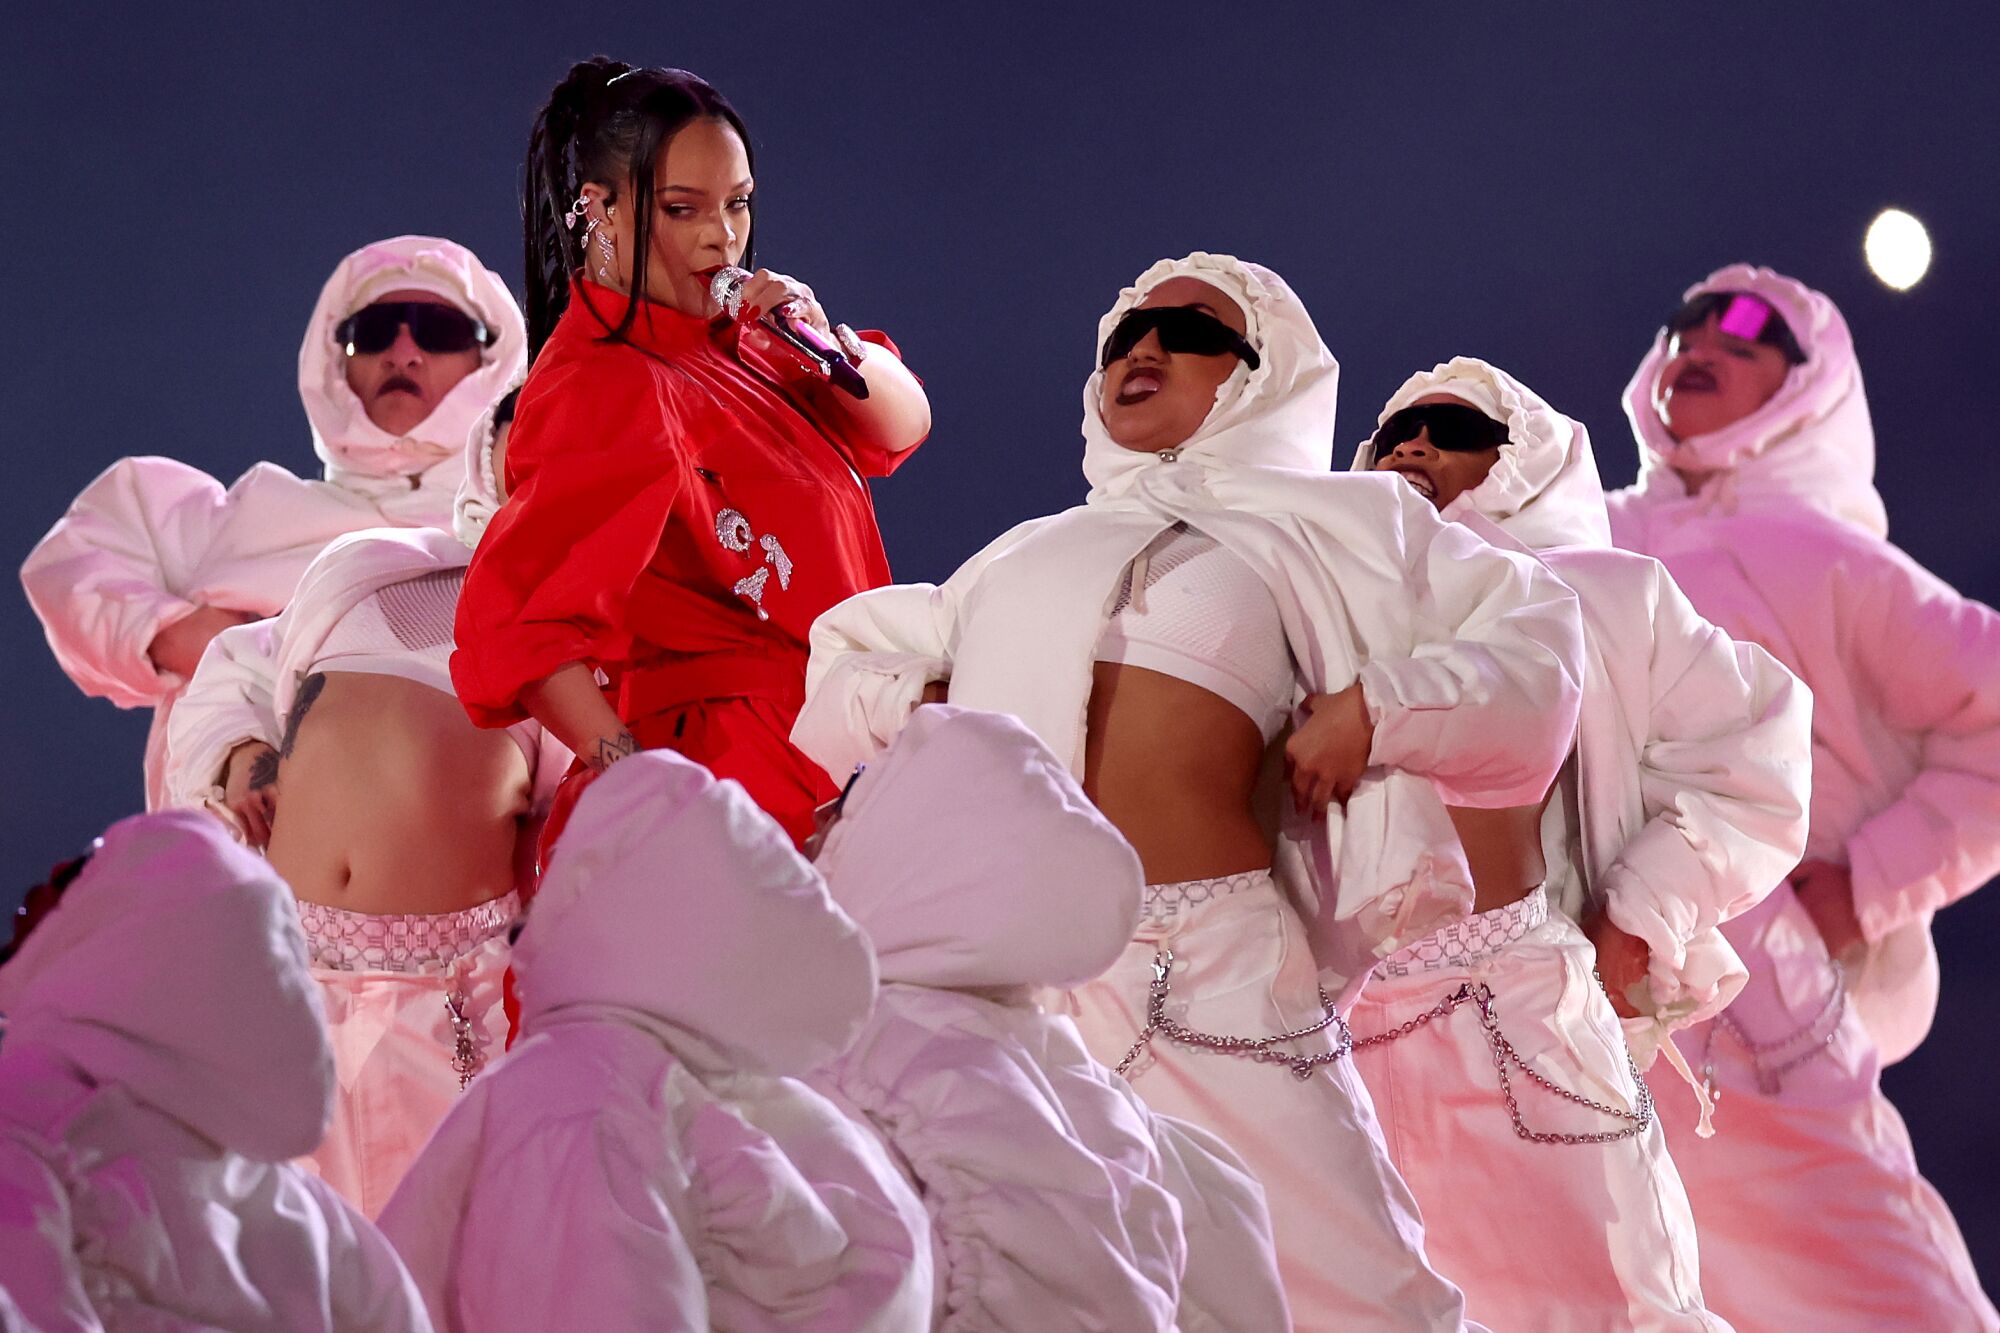 Rangkum Perjalanan Karier, Ini Setlist Rihanna saat Tampil di Super